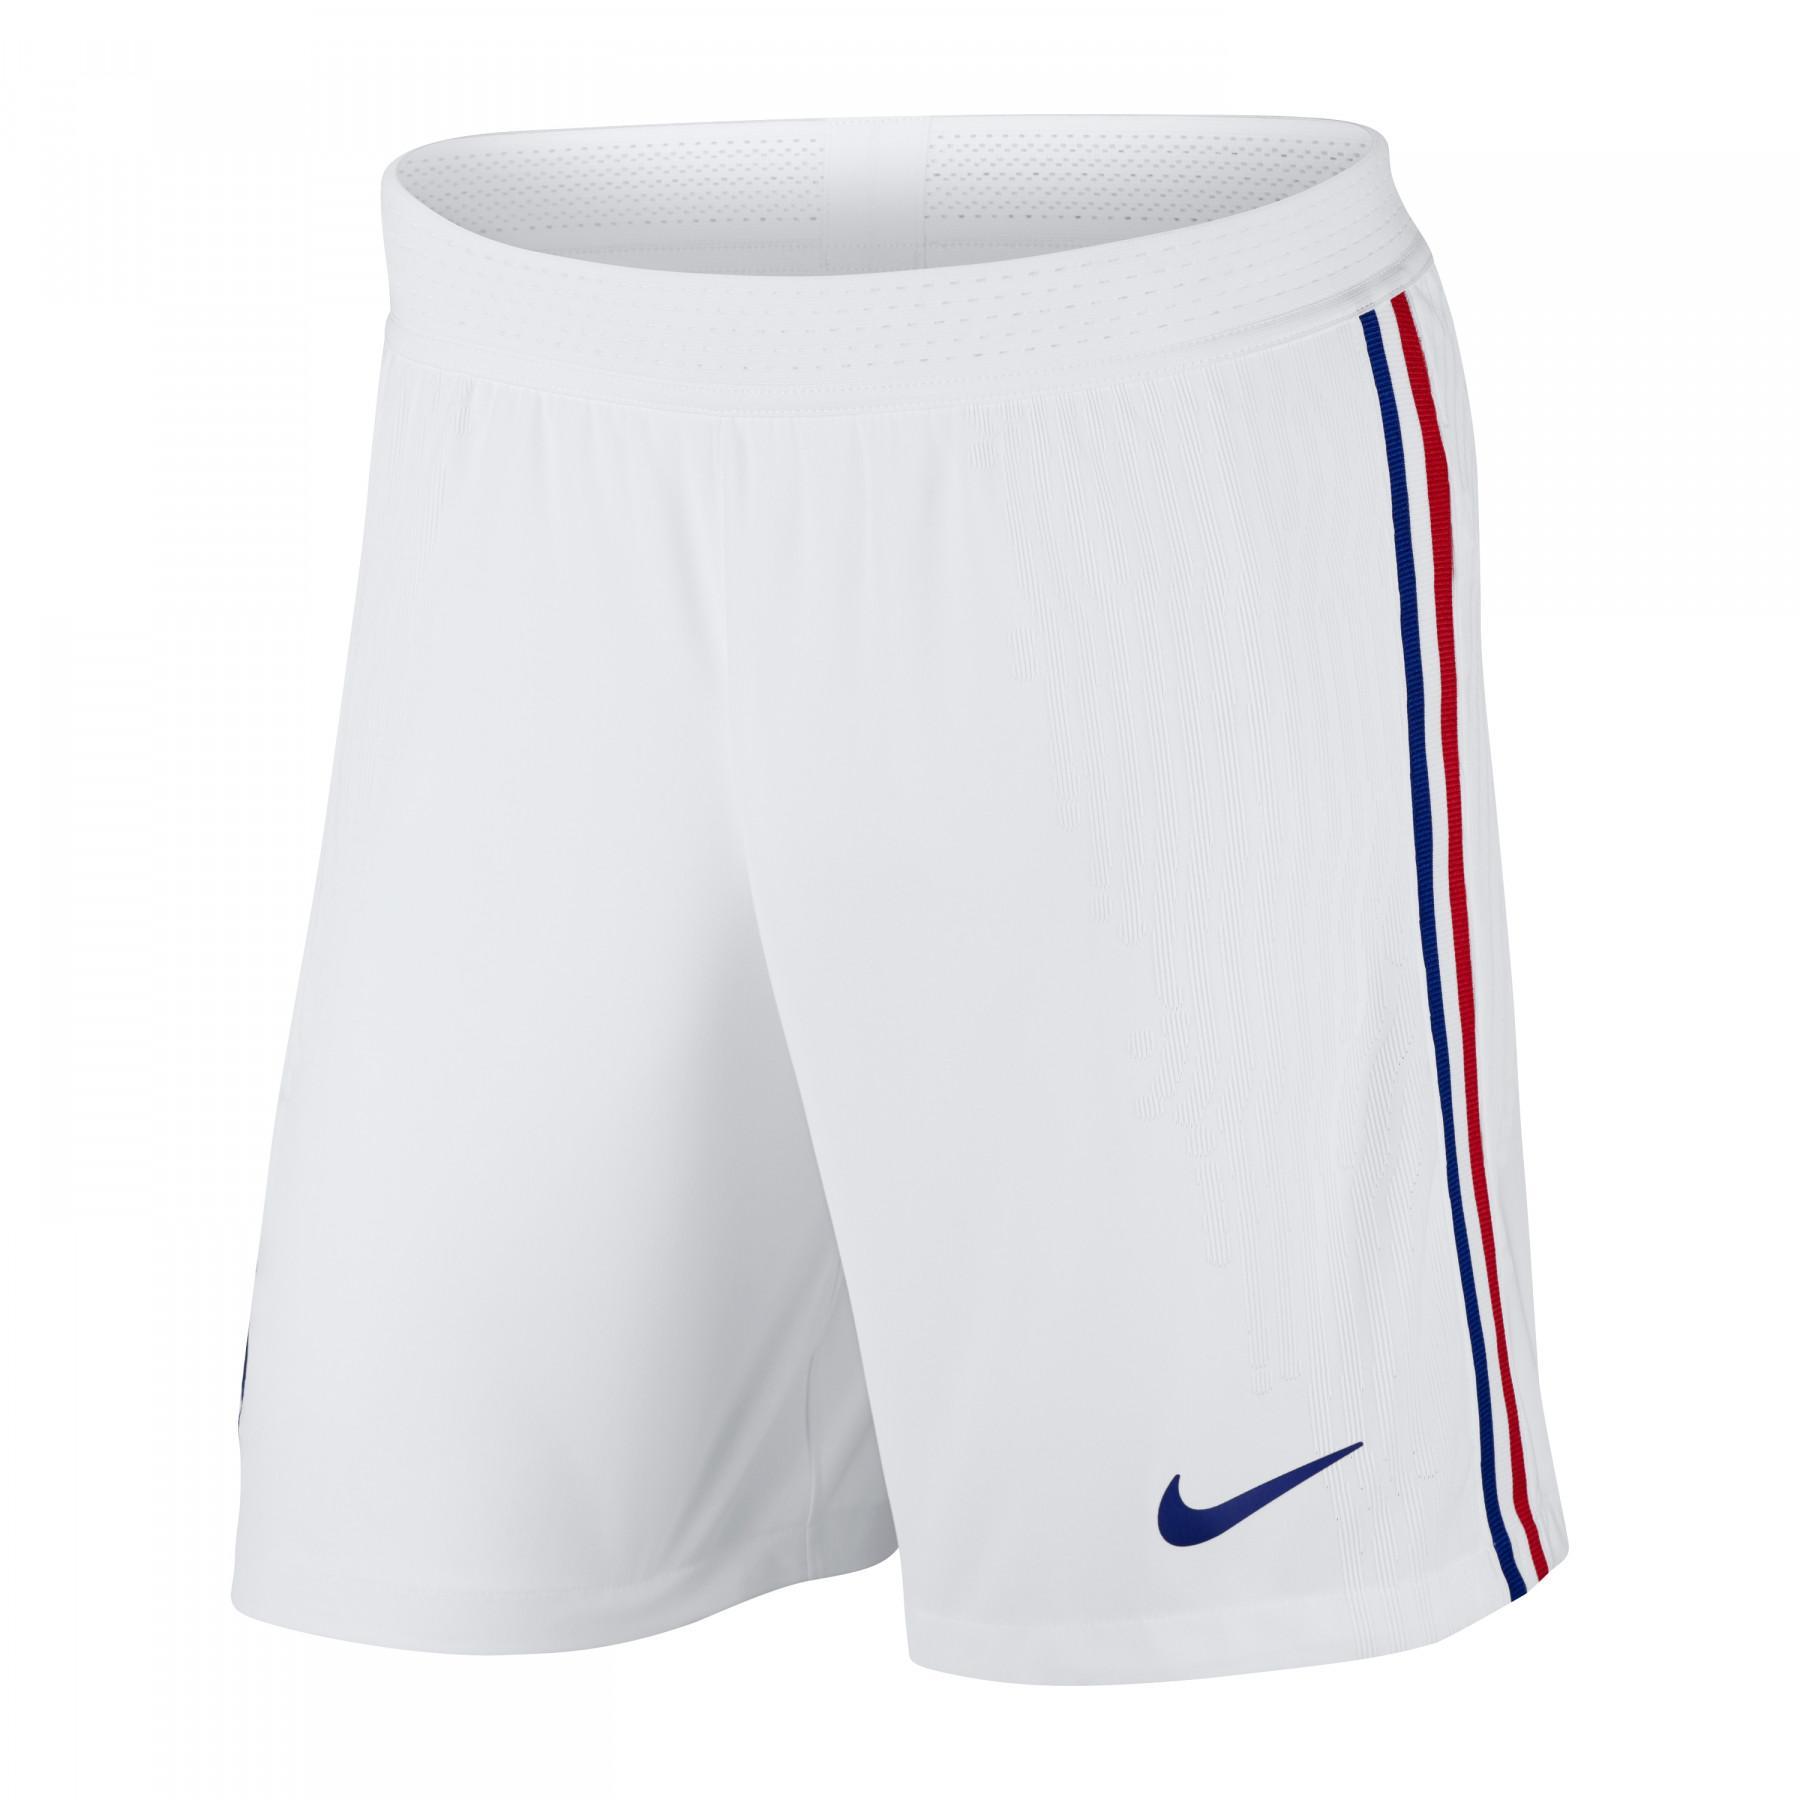 Auténticos pantalones cortos para exteriores France 2020